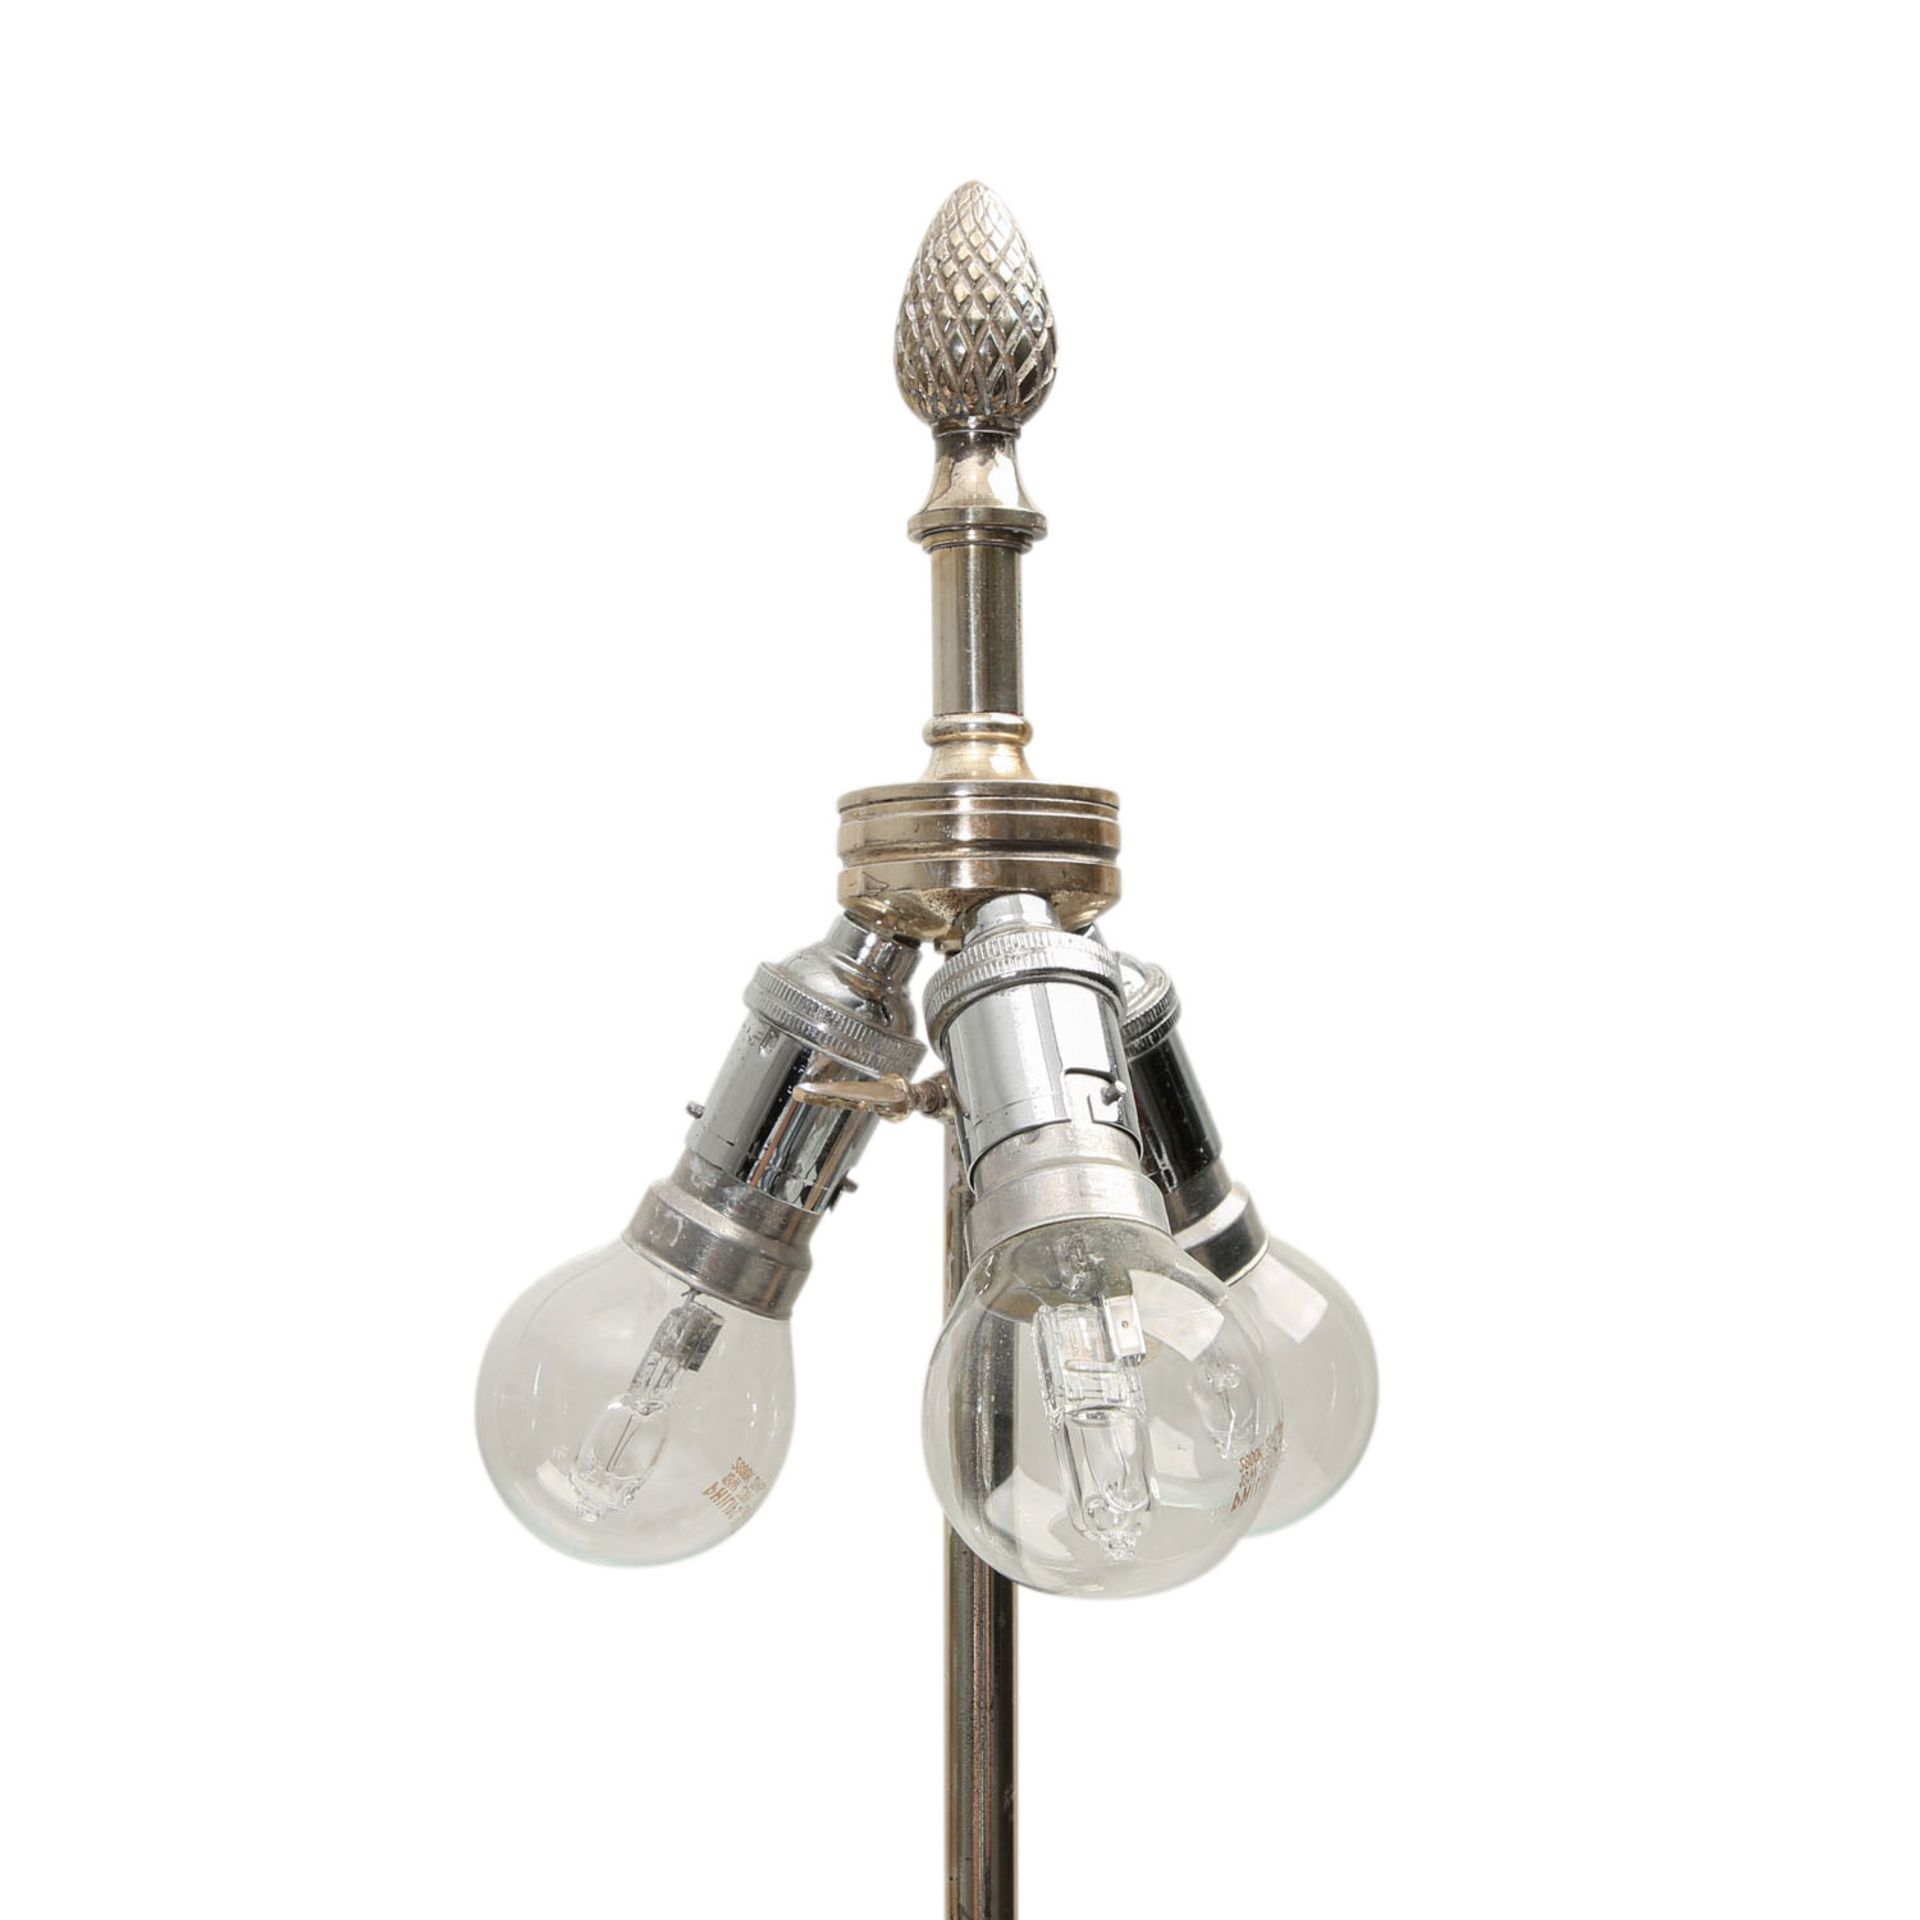 FRANKREICH Tischlampe 'Maiskolben', versilbert, 20. Jhd..Lampenfuß besteht aus einem Postament mit - Bild 3 aus 6